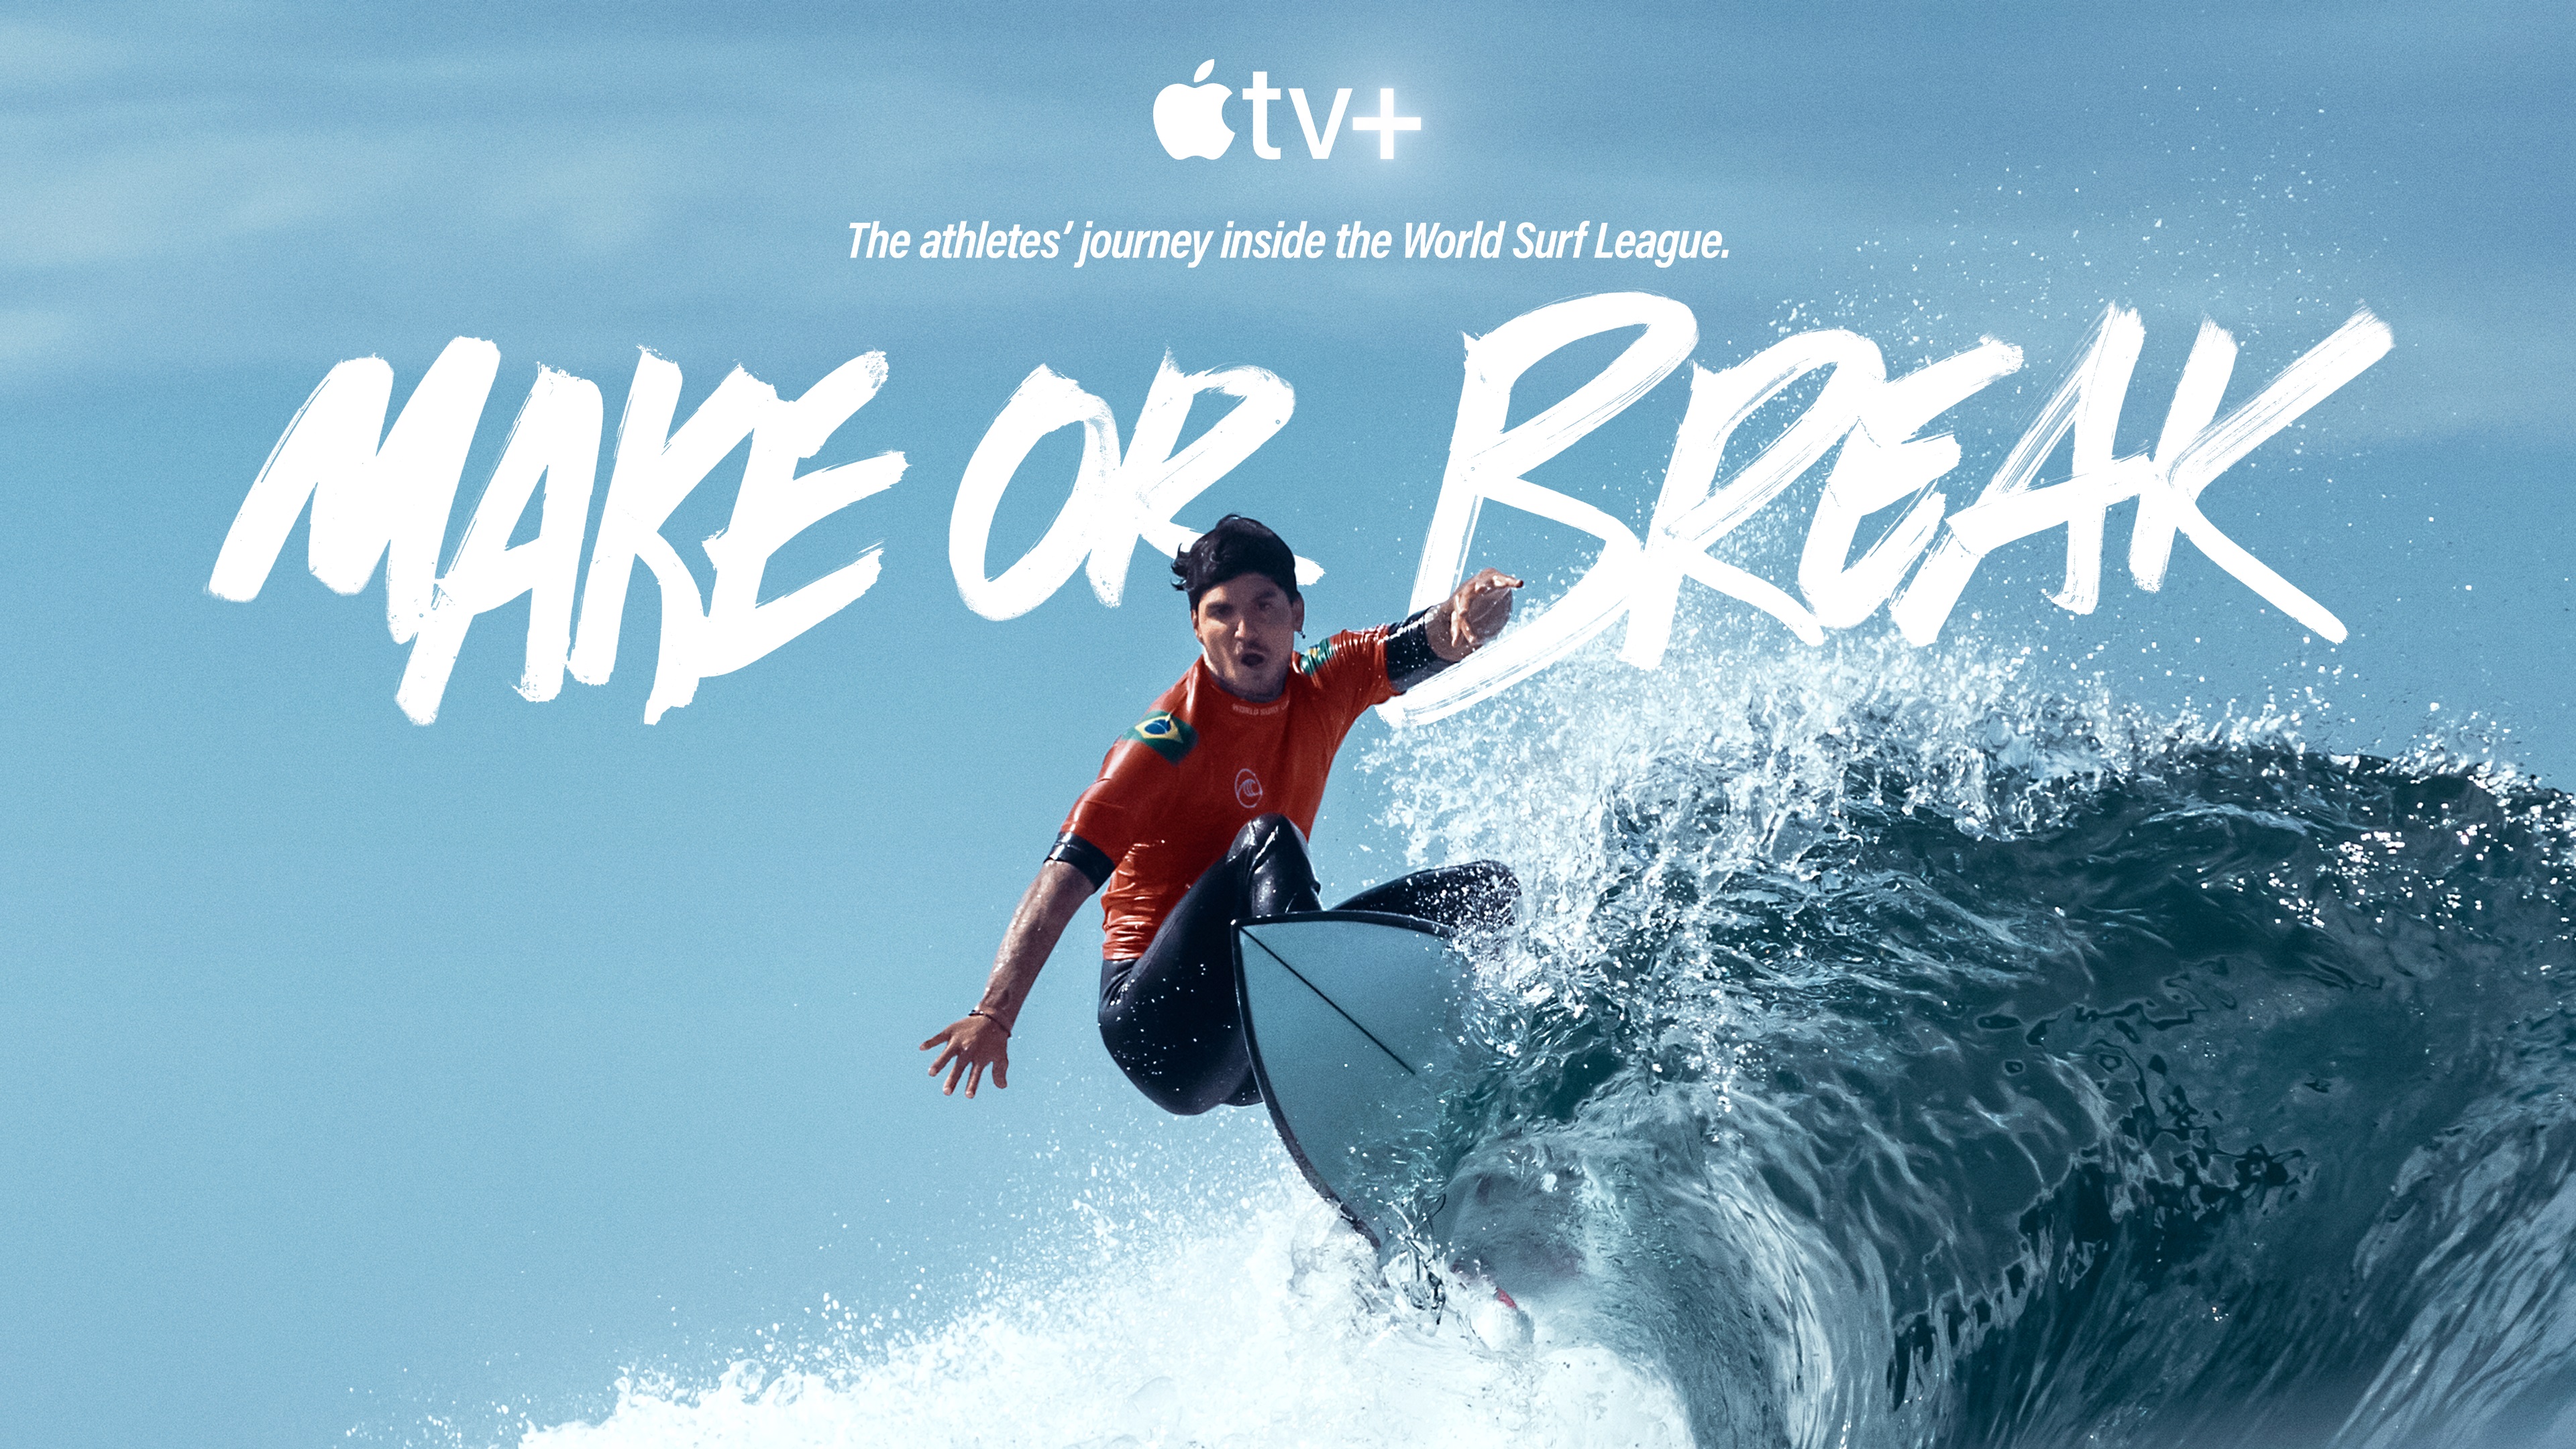 Make or Break on Apple TV+